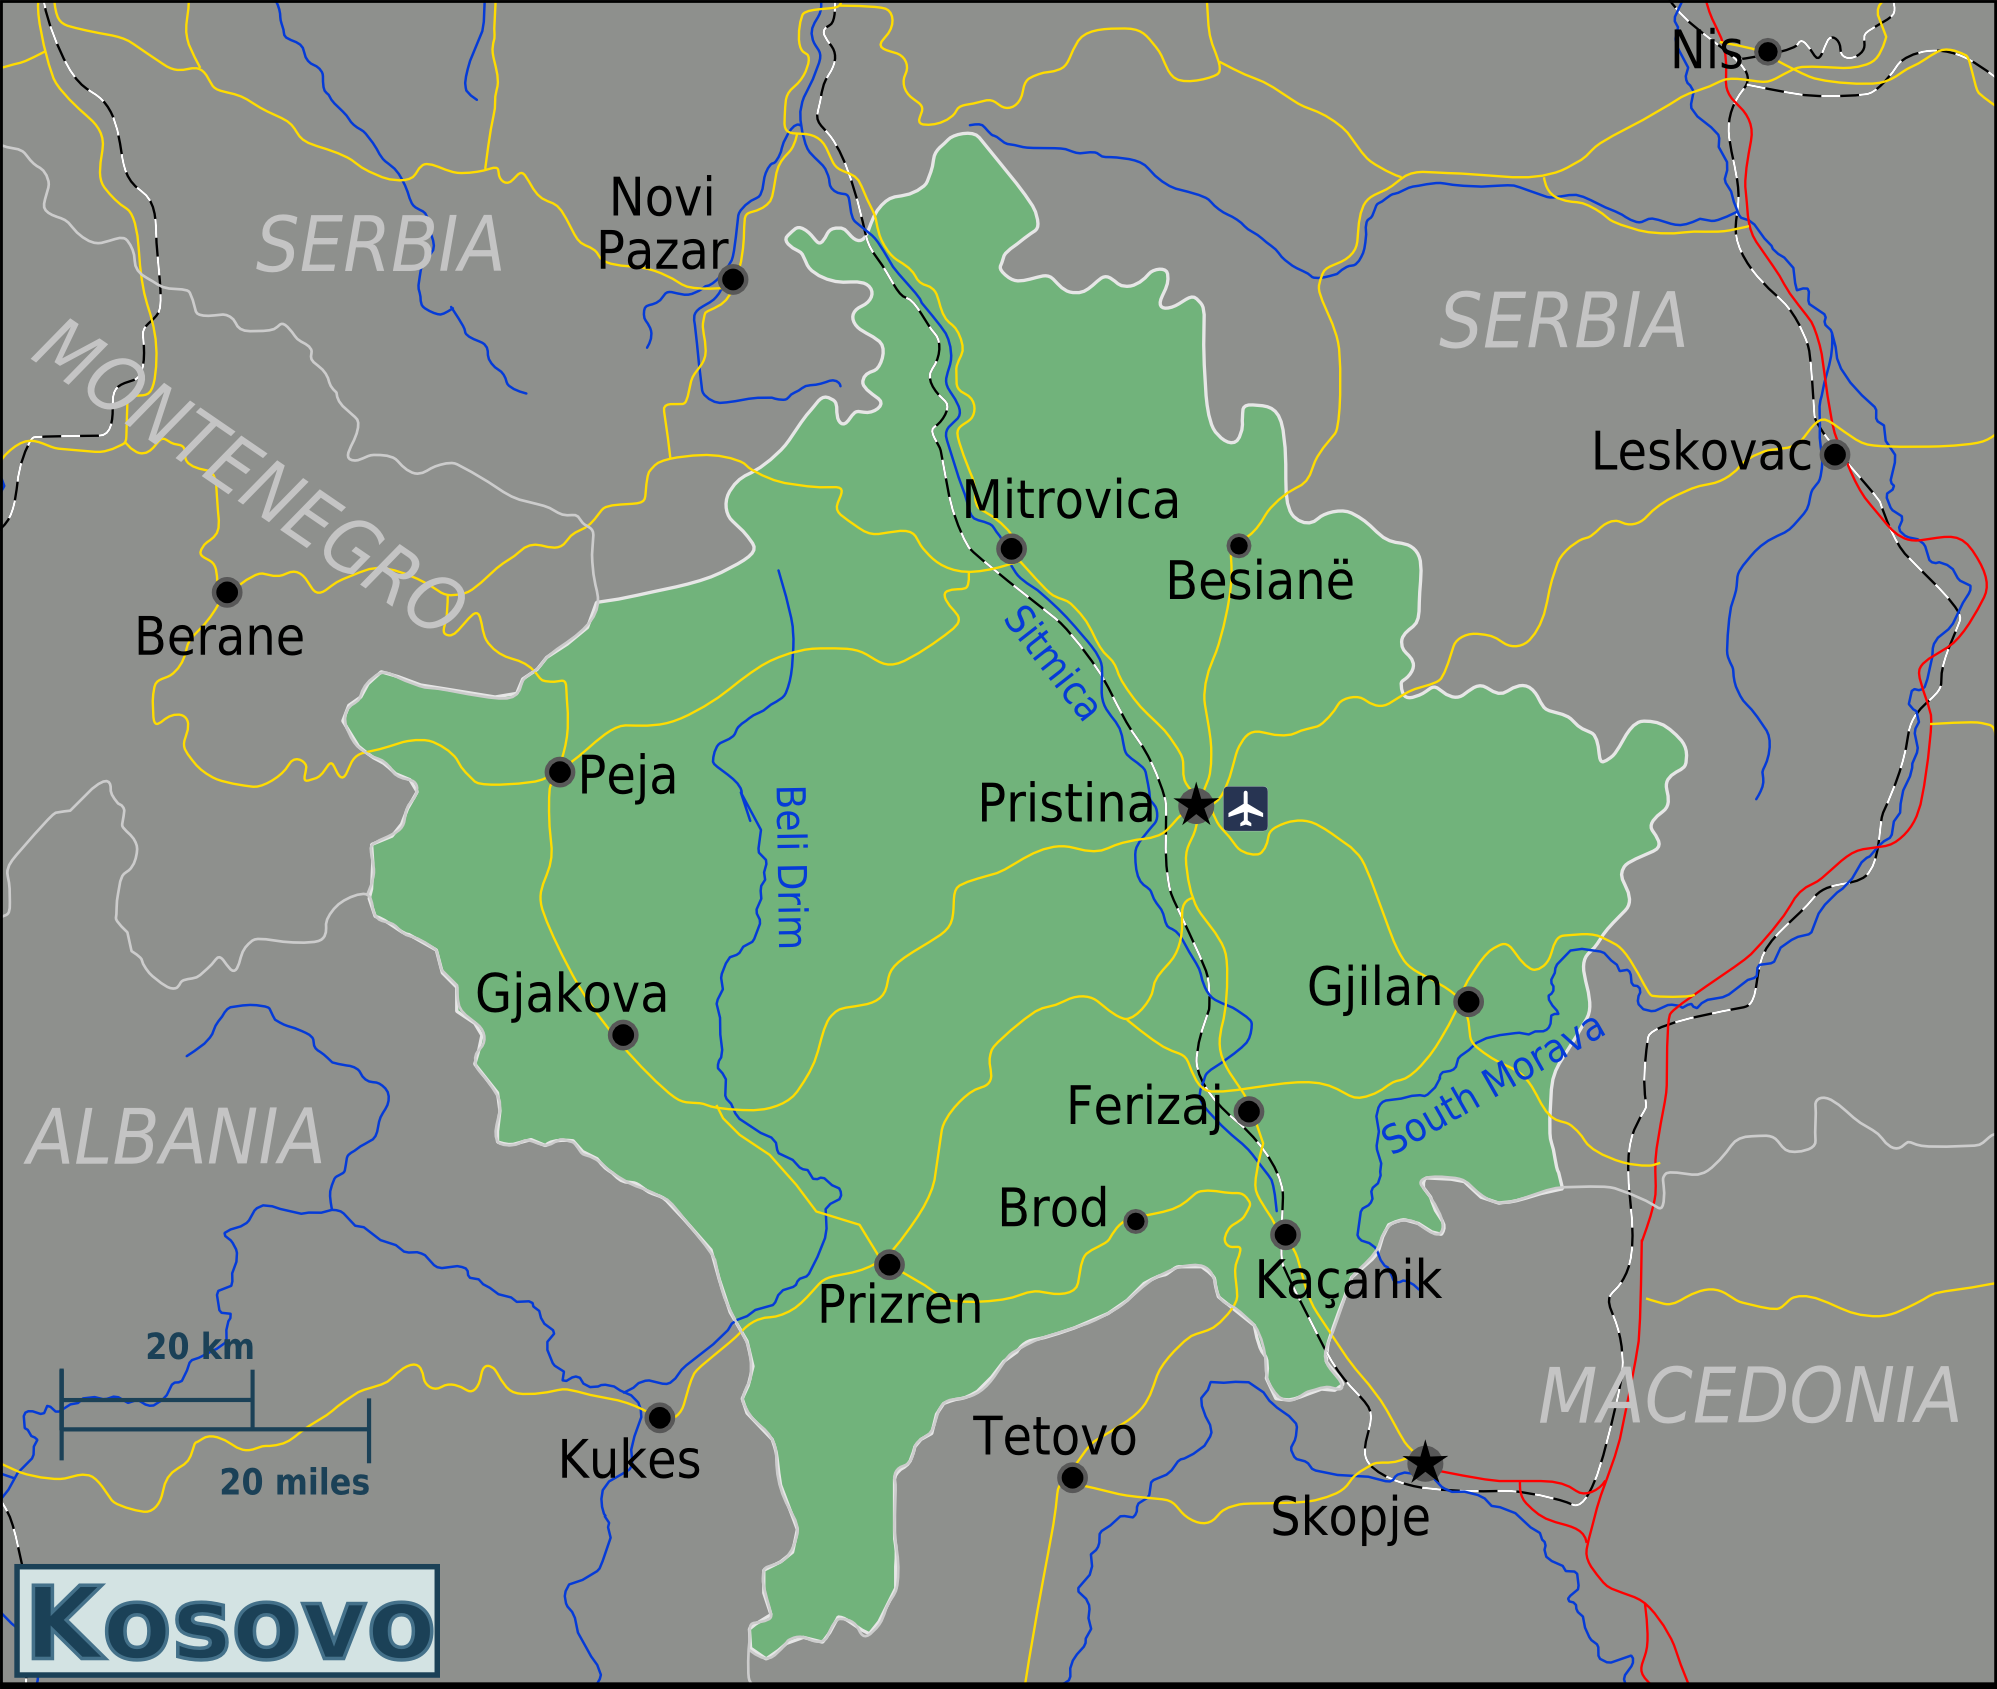 A Kosovo connection